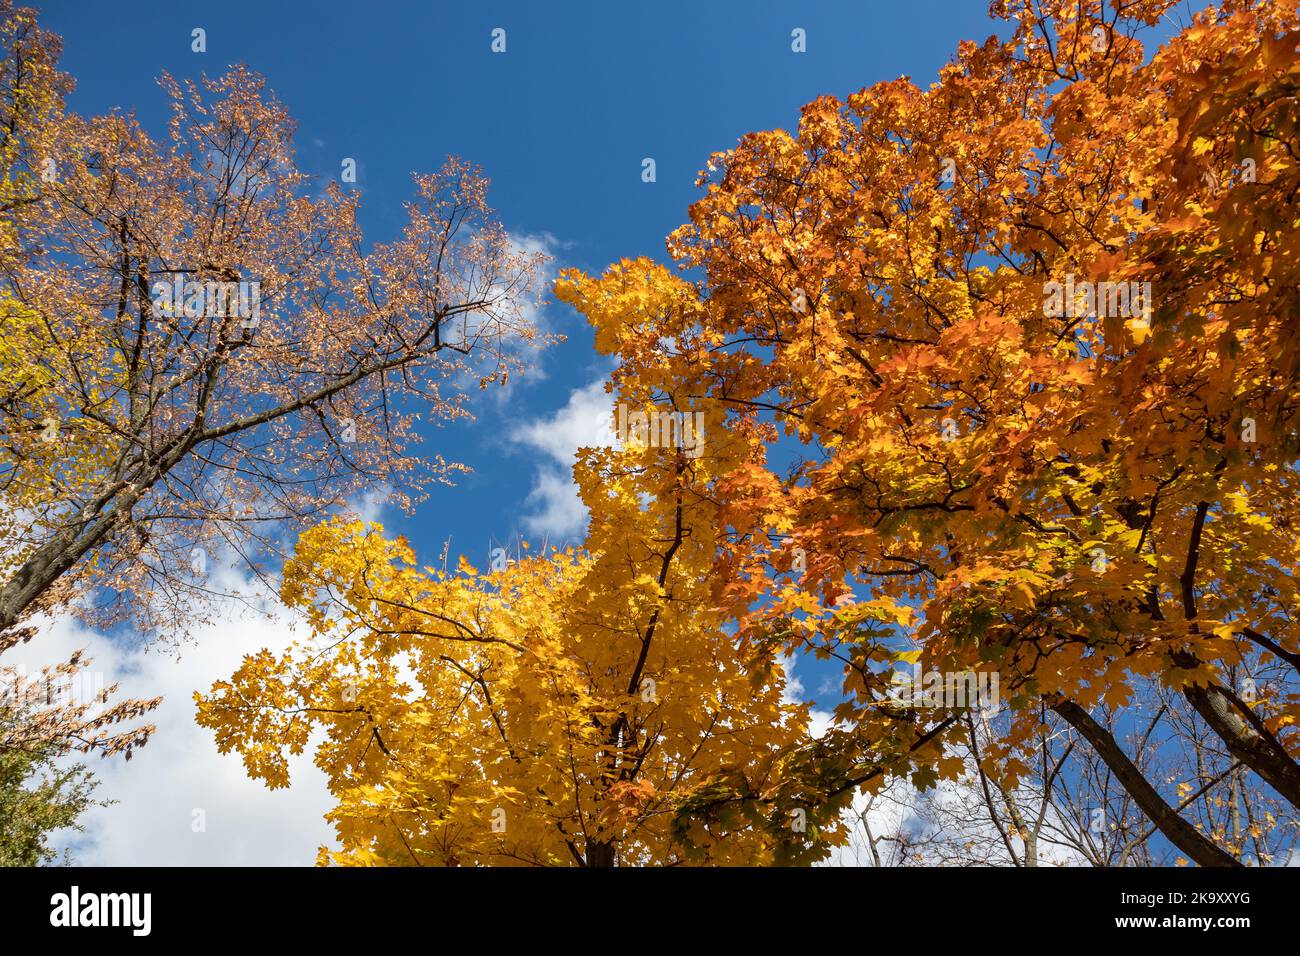 Temporada dorada de otoño mira hacia arriba. Ramas de los árboles de arce con hojas de color amarillo sobre el cielo azul con nubes, fondo natural otoñal del bosque Foto de stock